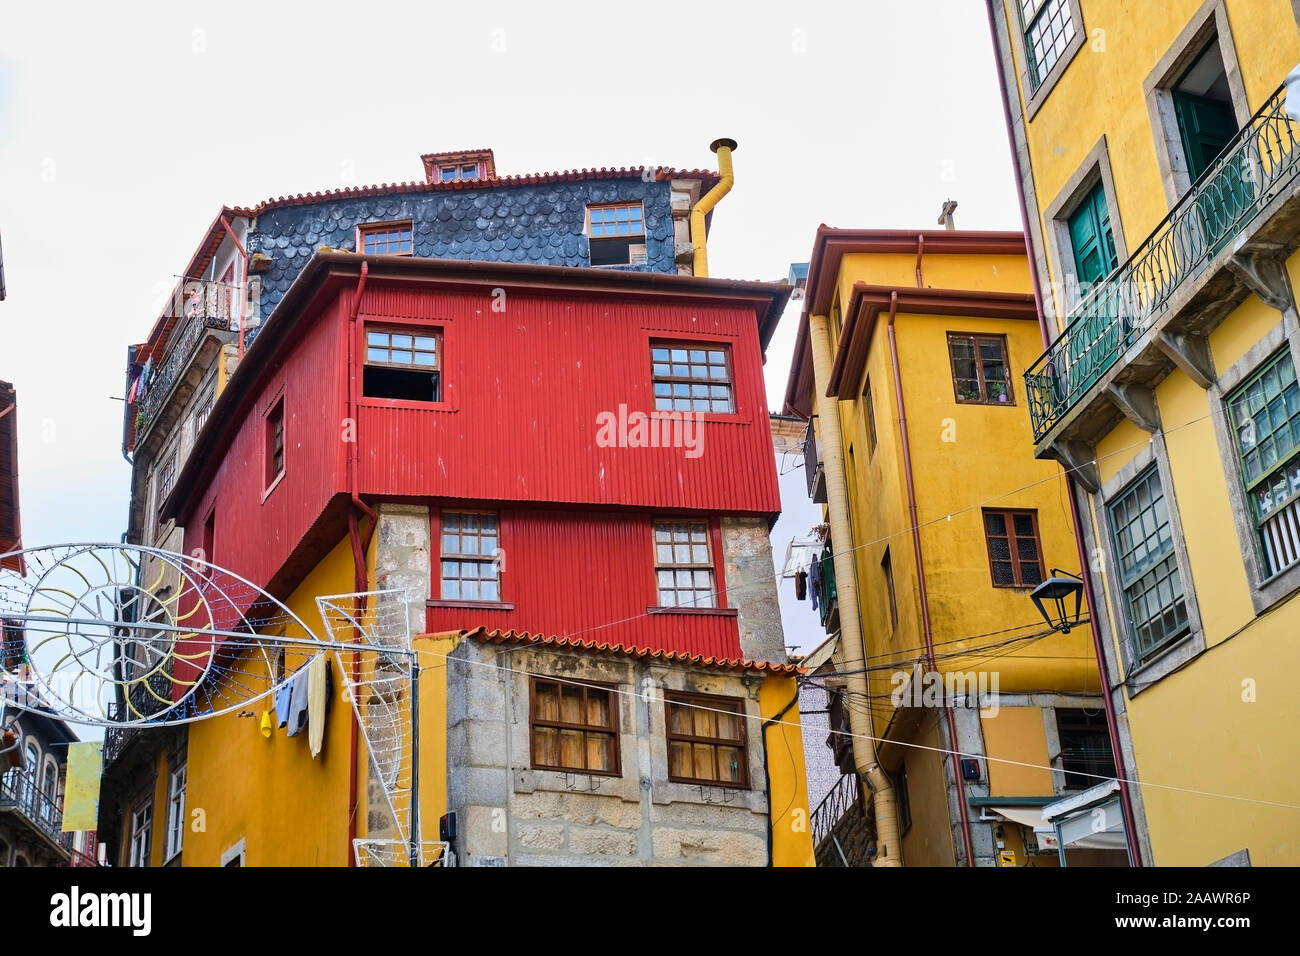 Portugal, Porto, coloridas casas en plaza Ribeira Foto de stock